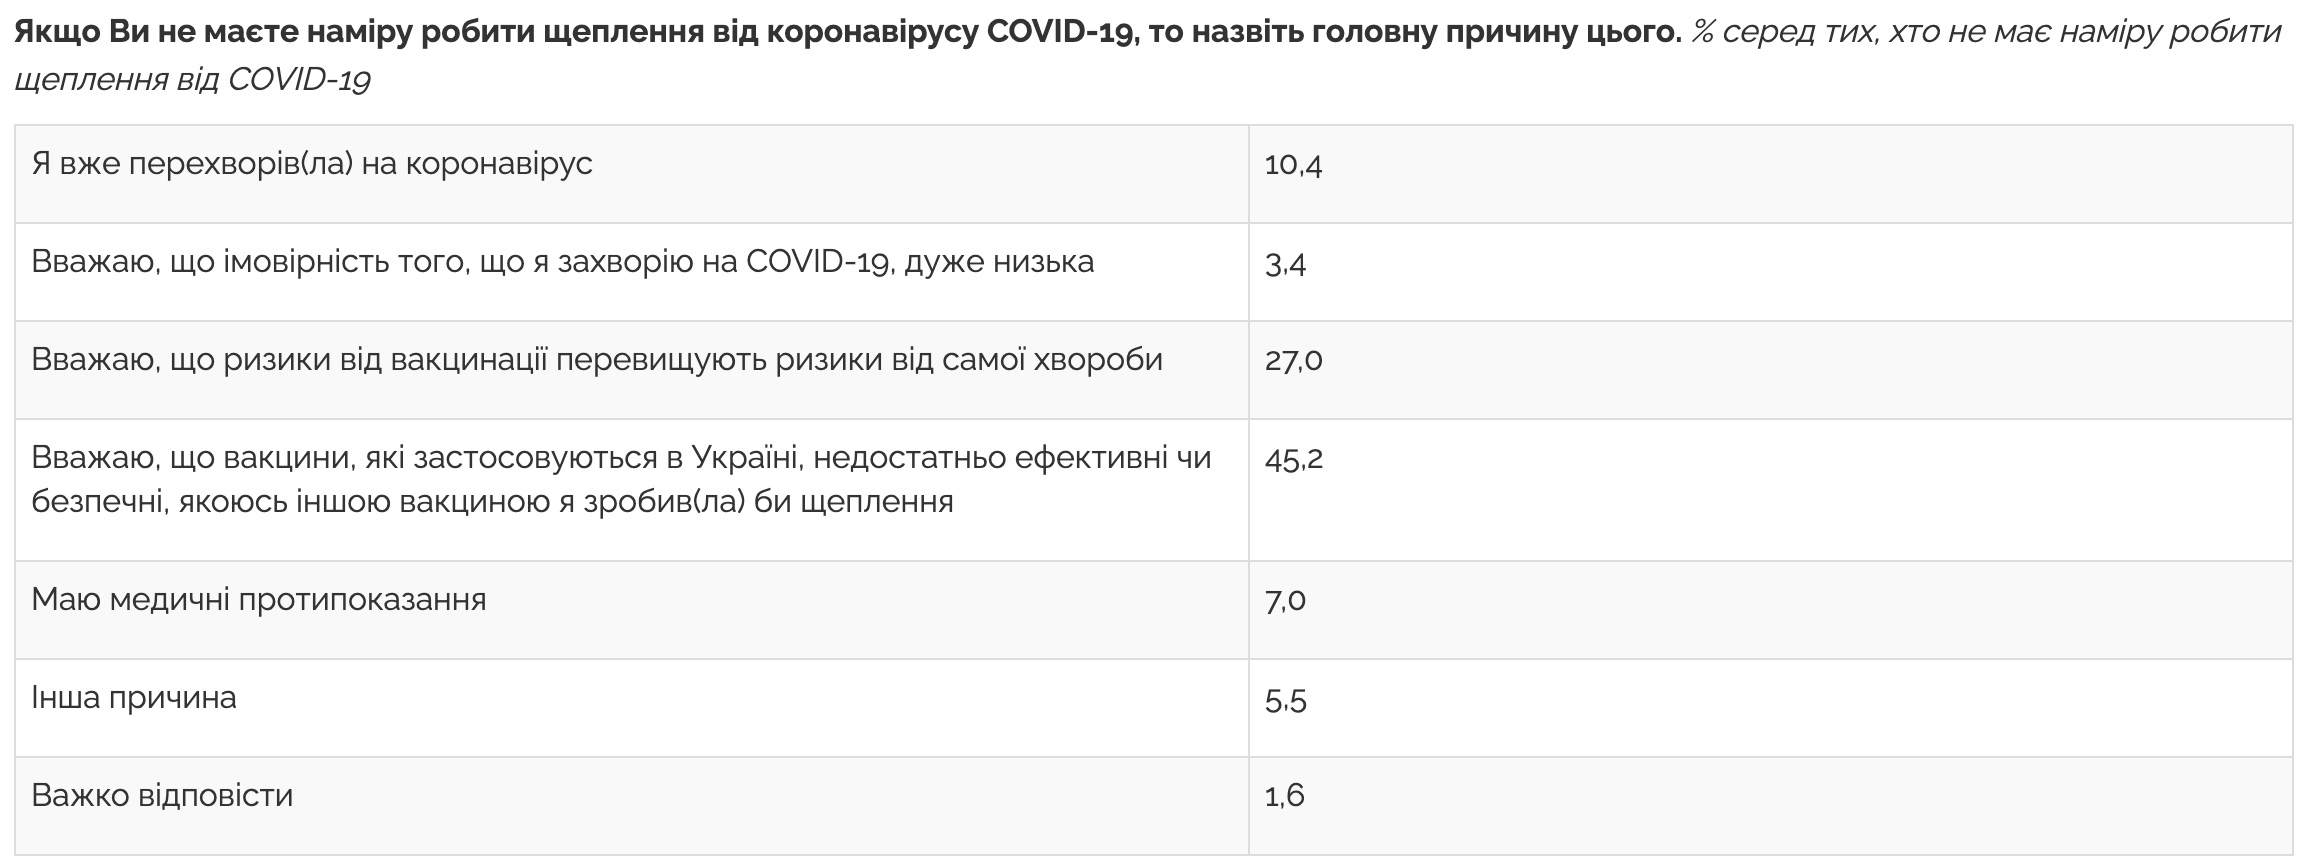 Более половины украинцев не хотят вакцинироваться против коронавируса – пять причин: опрос